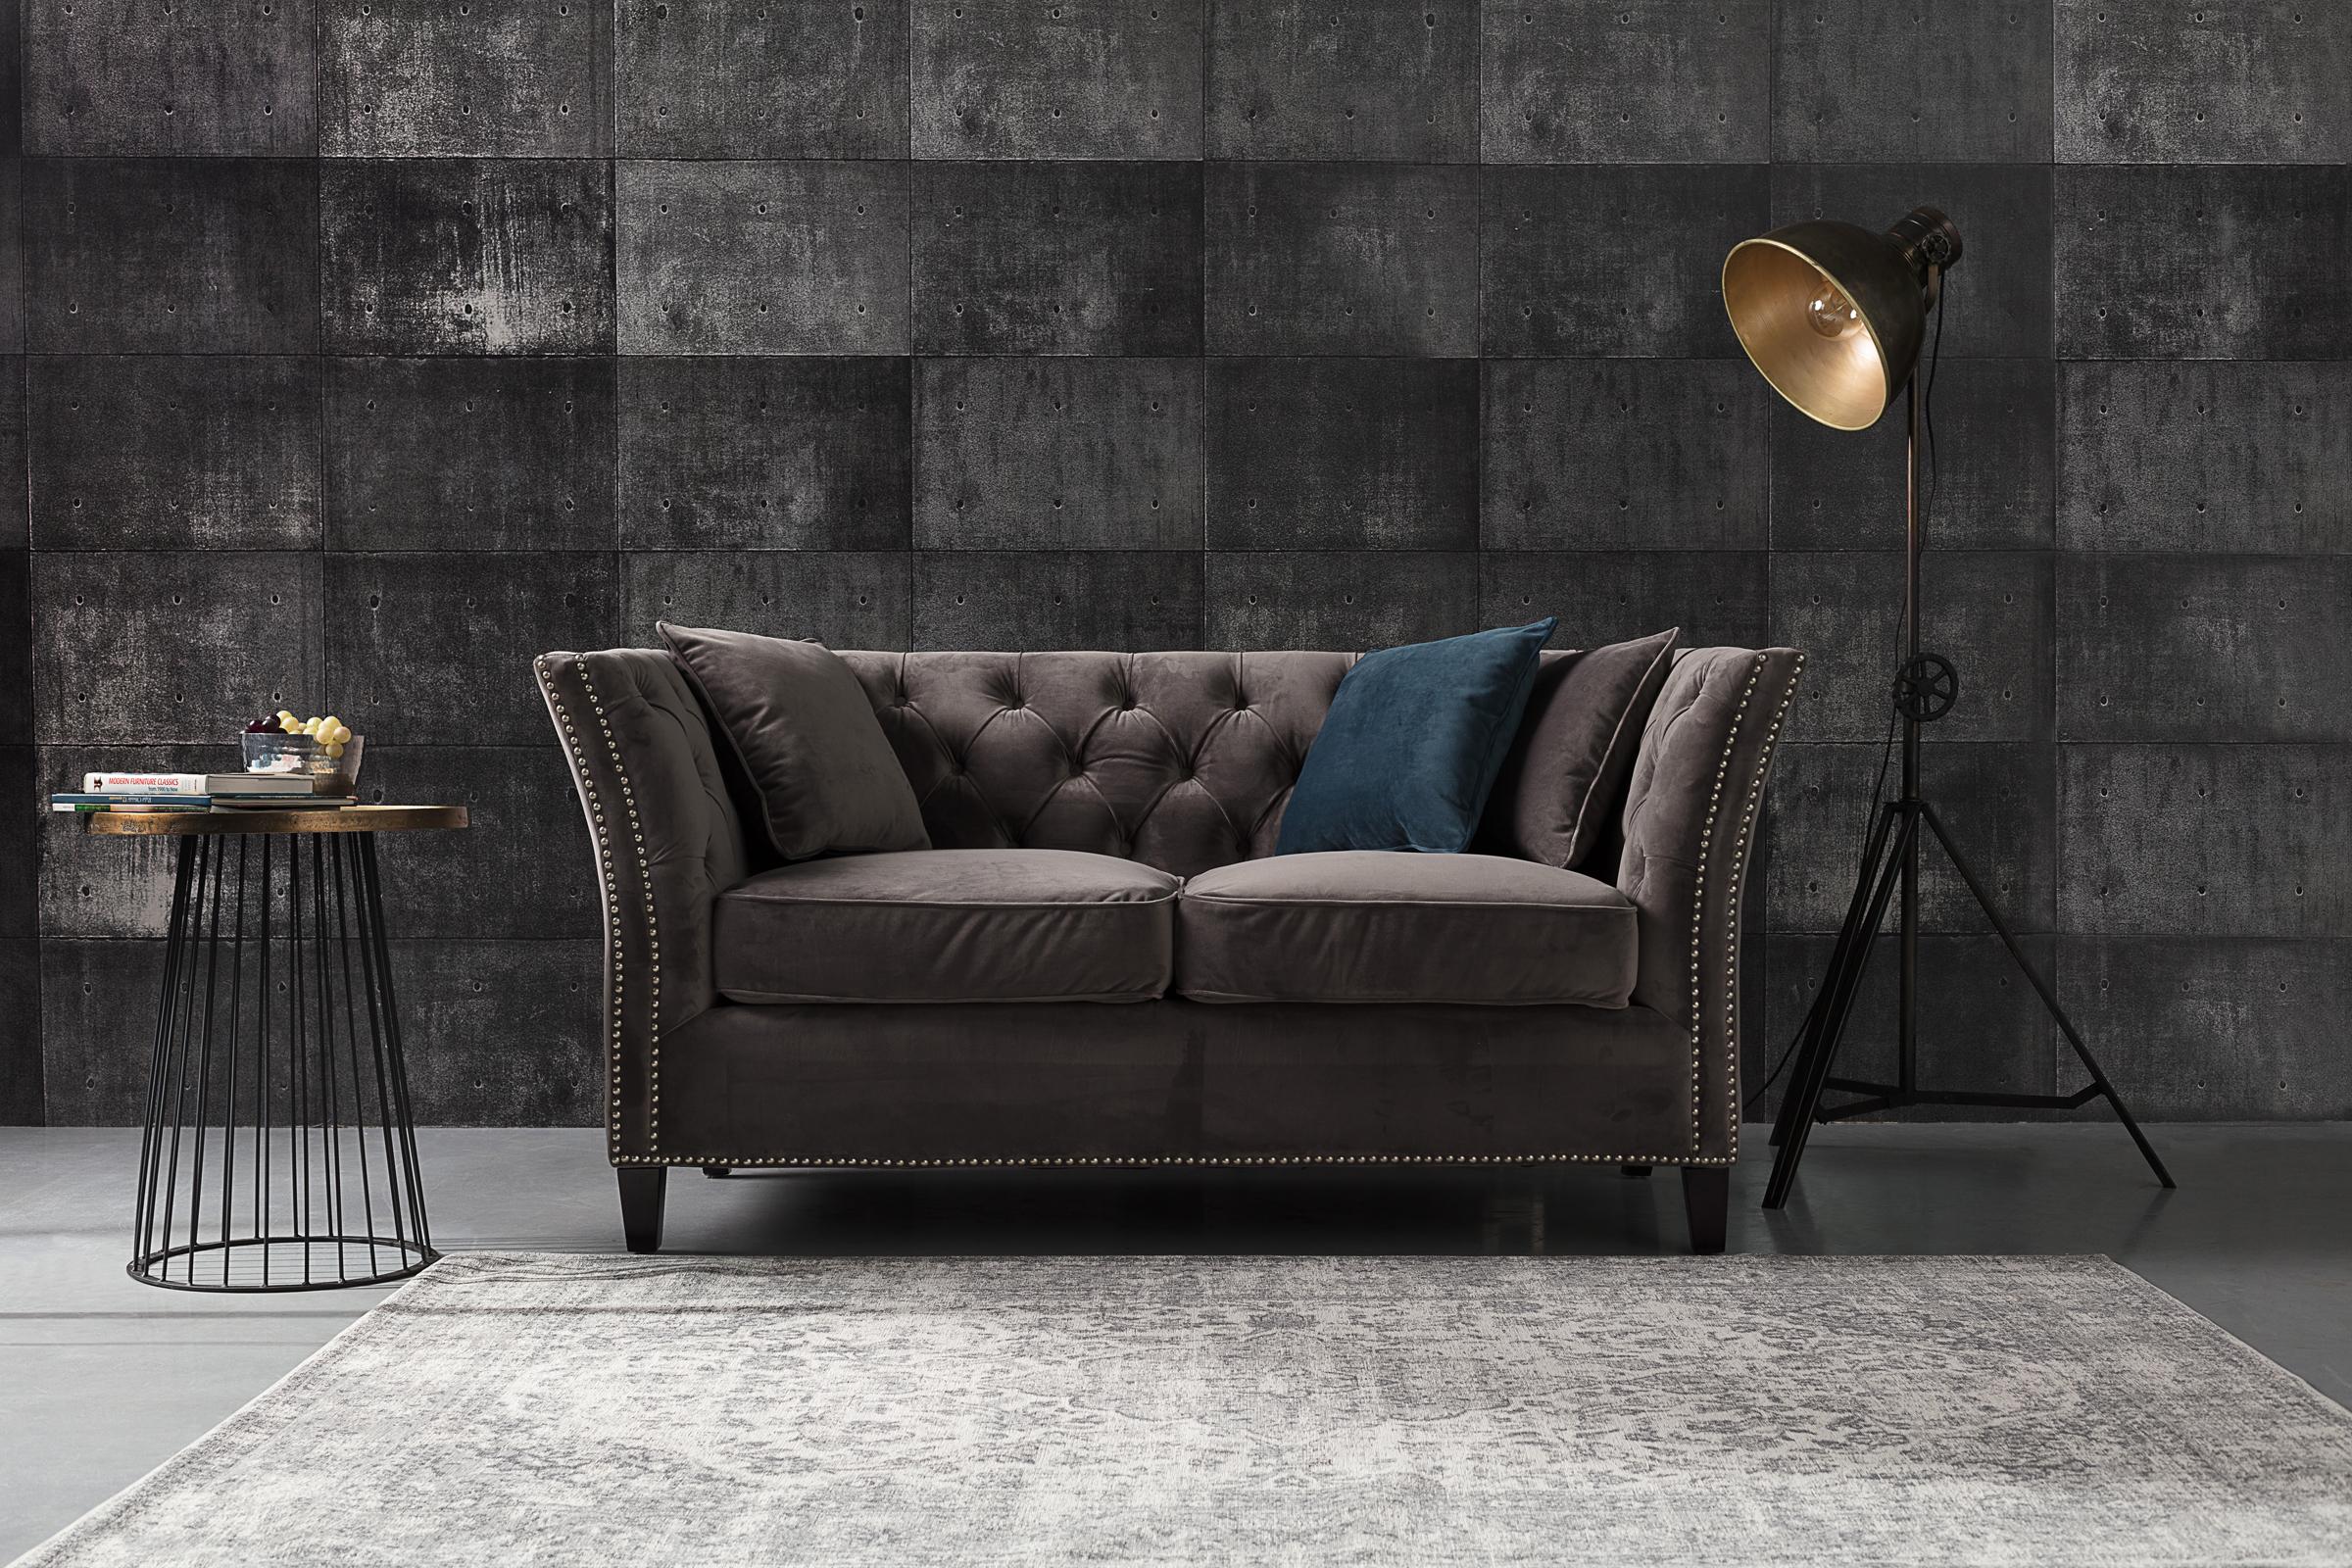 Ein #Chesterfield-#Sofa wirkt in jedem Raum. Die samtene, dunkelgraue Polsterung wirkt edel und elegant.